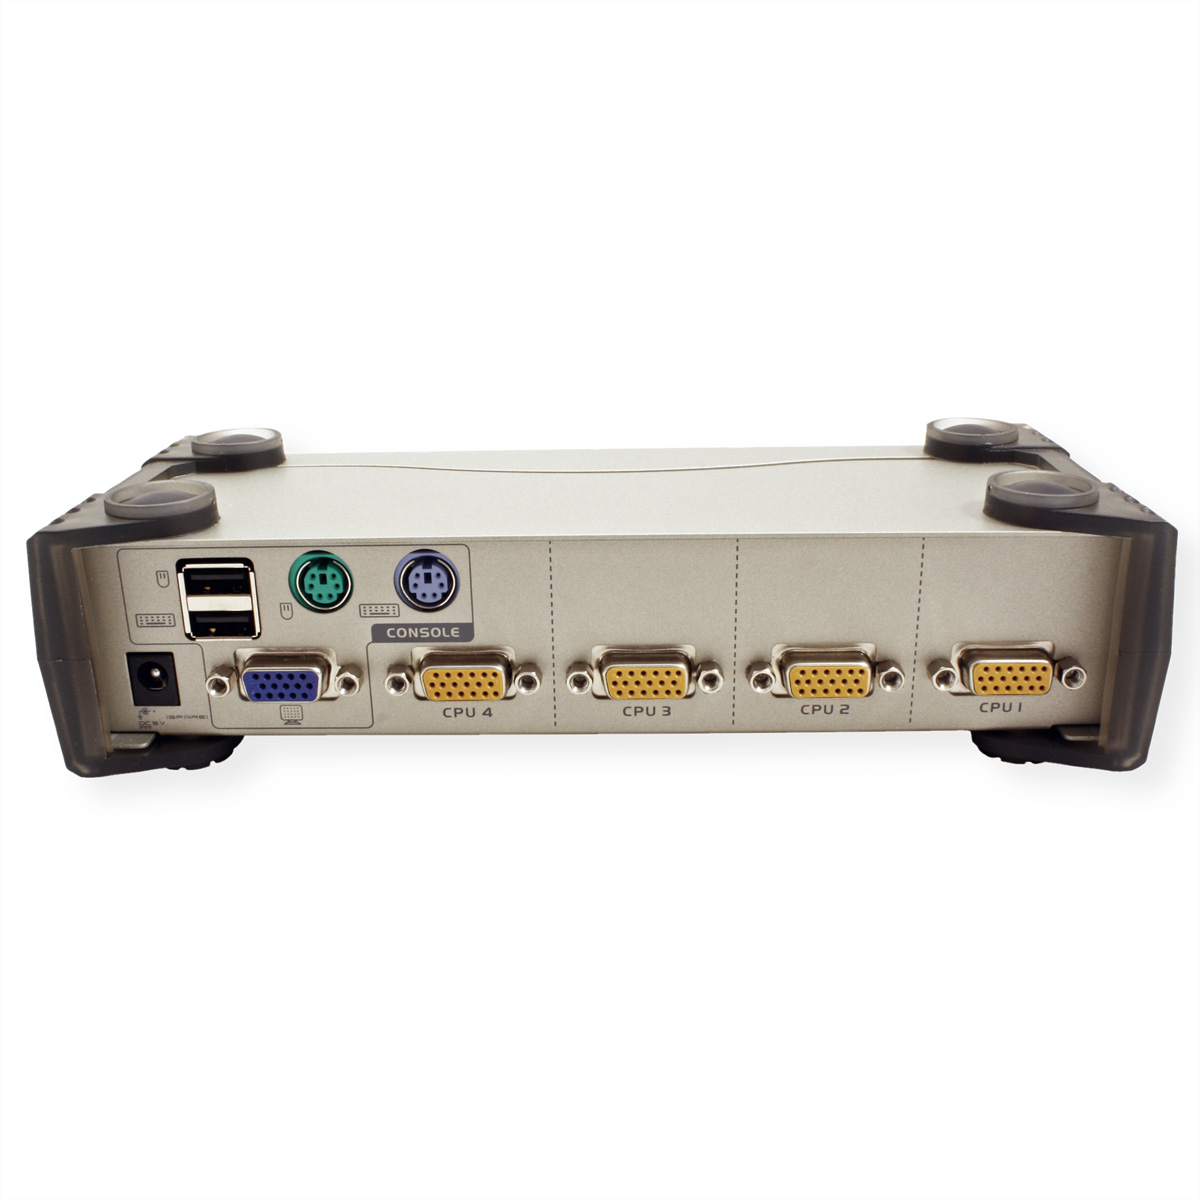 VGA, Switch PS/2+USB, CS84U Ports ATEN KVM 4 VGA KVM-Switch,